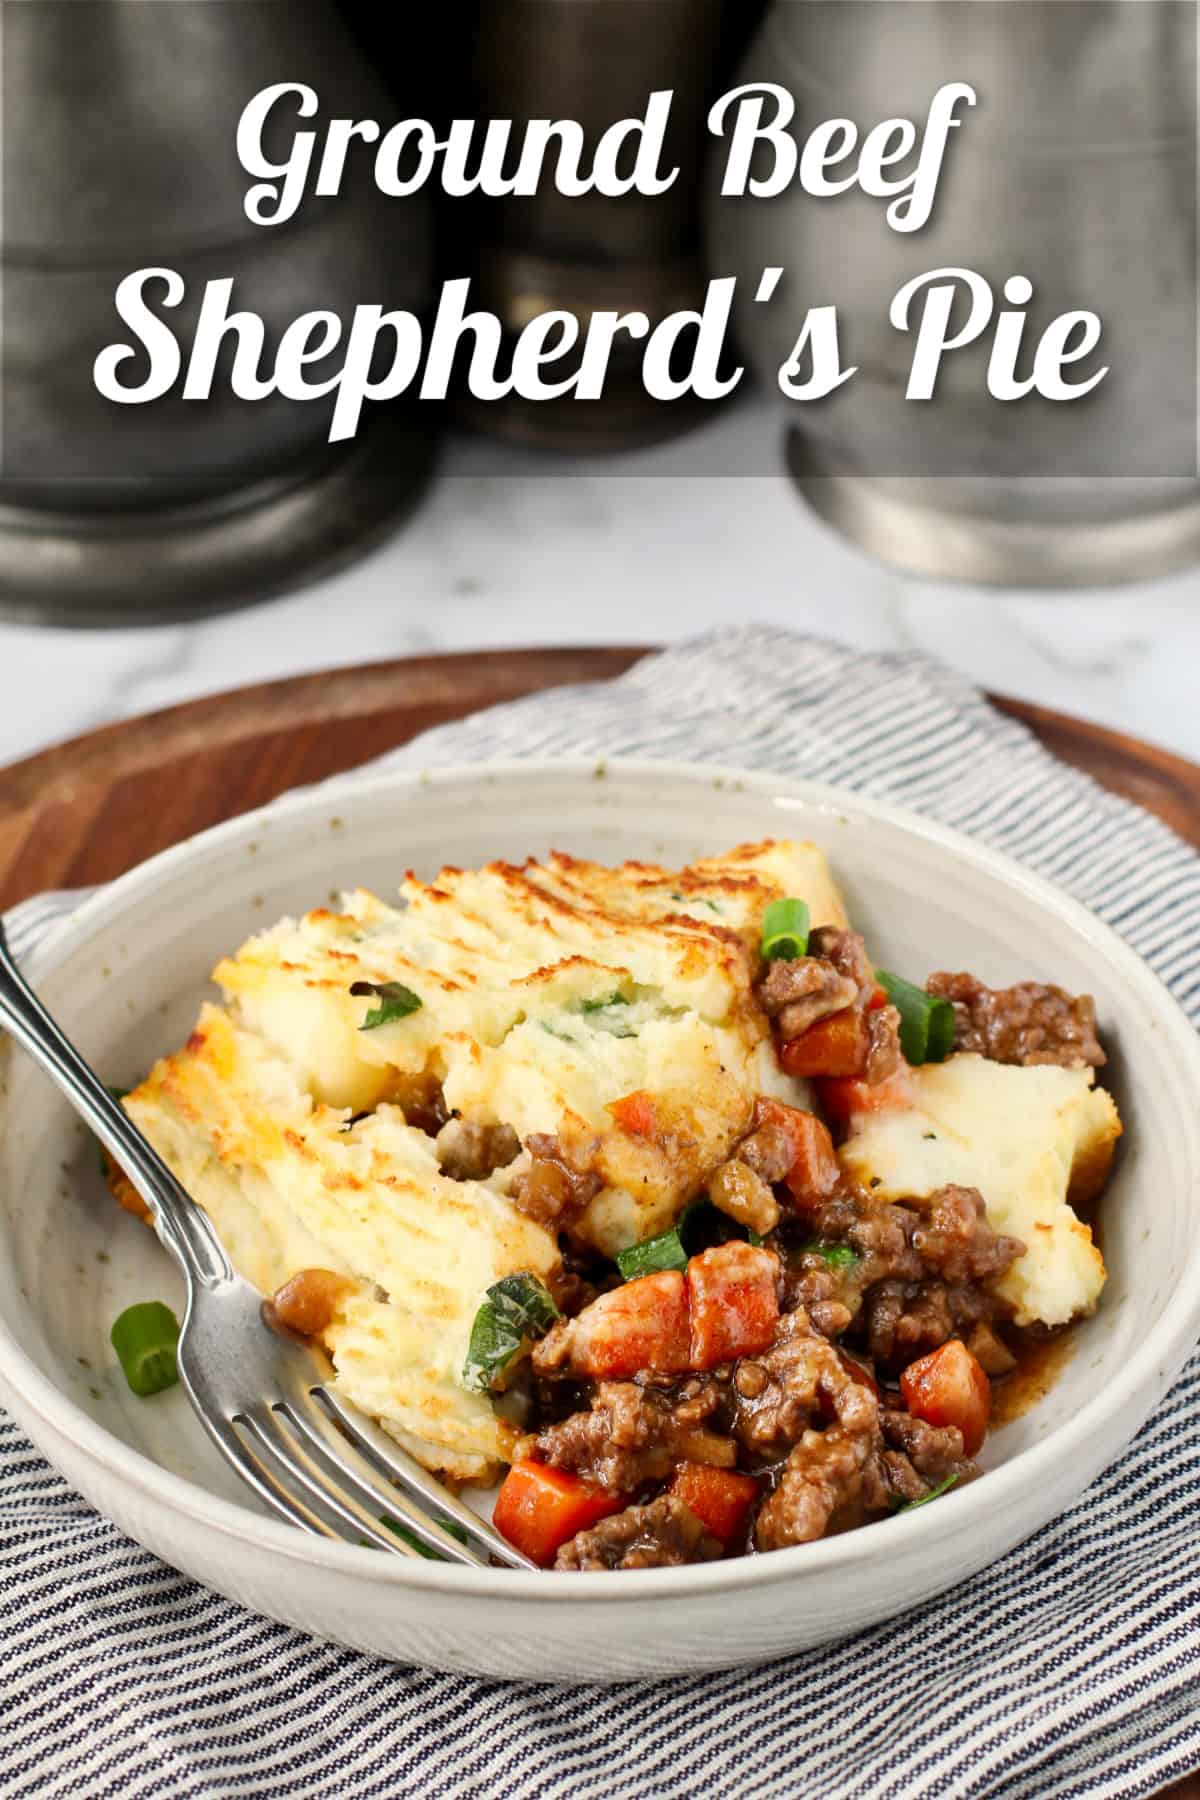 Shepherd's Pie in a bowl.